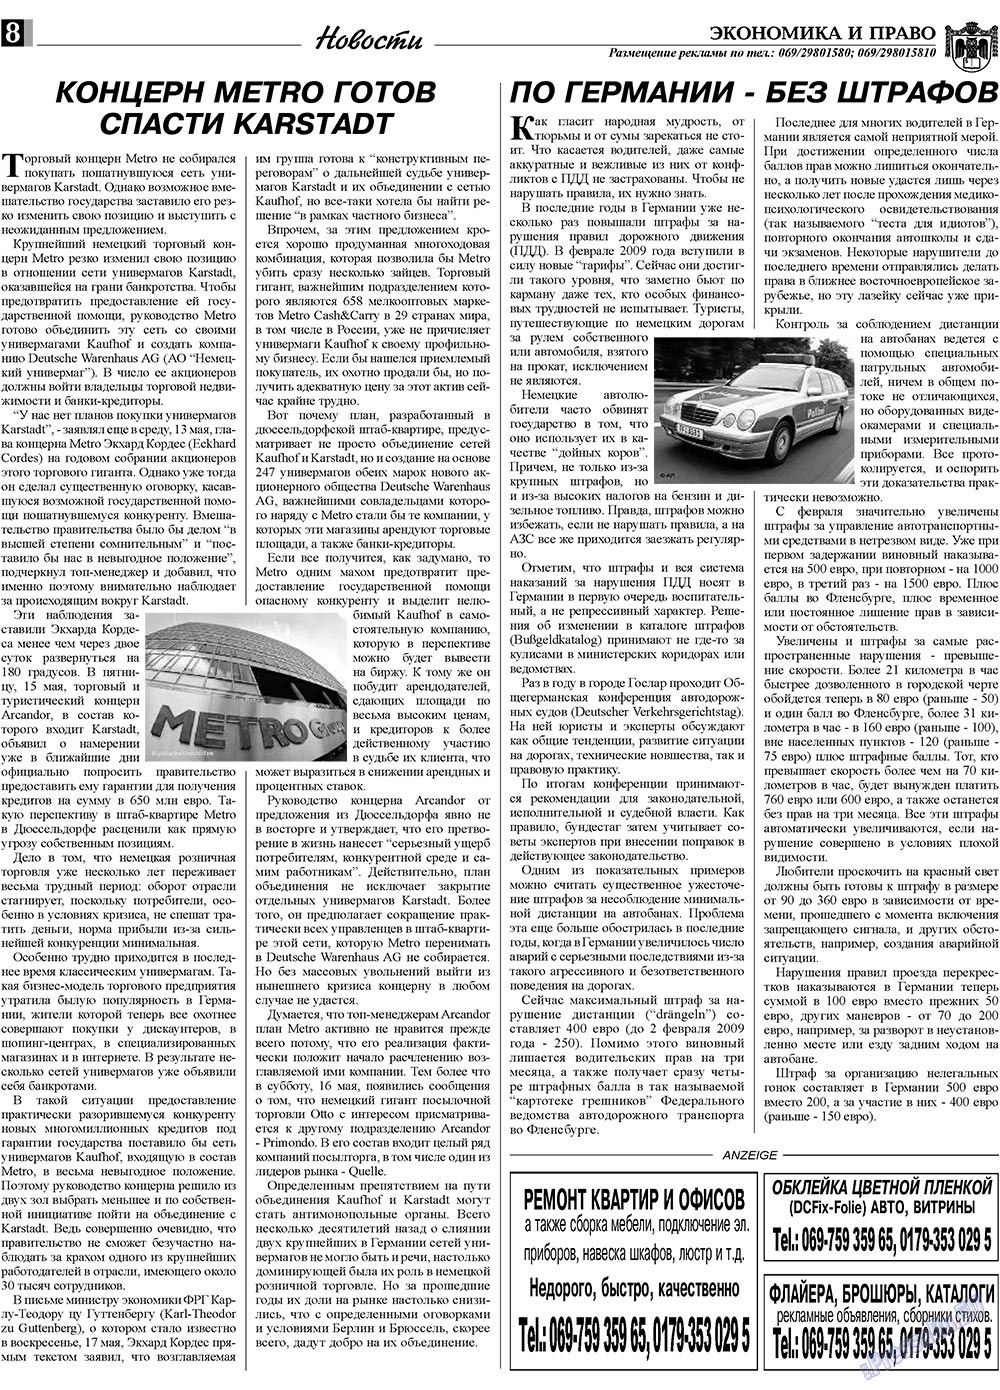 Экономика и право, газета. 2009 №6 стр.8